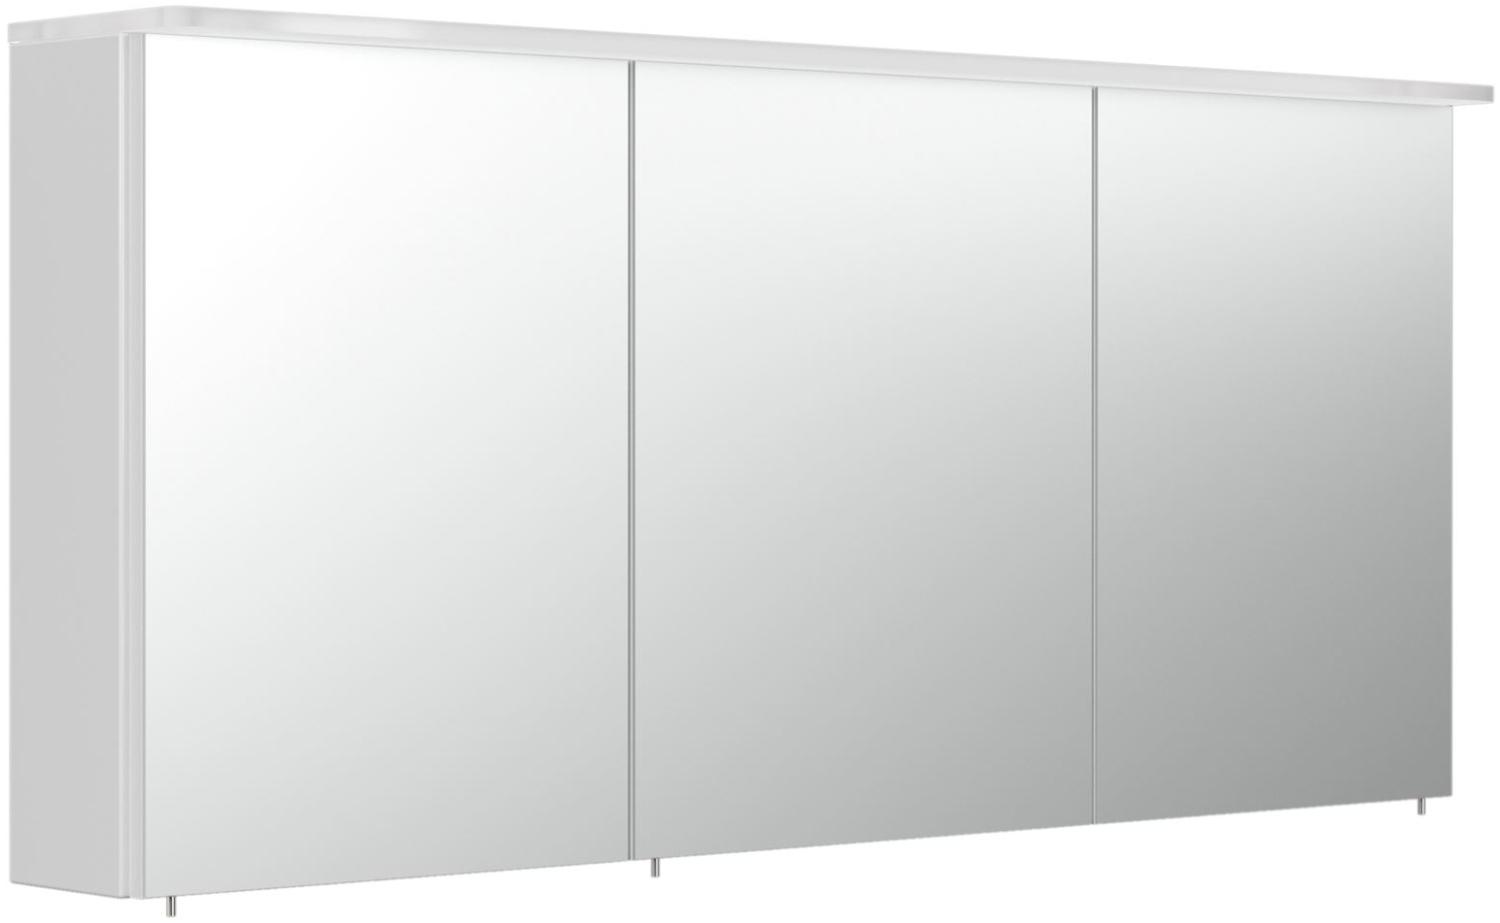 Posseik Spiegelschrank m. Design-Acryl-LED-Lampe 140cm weiß hochglanz Bild 1